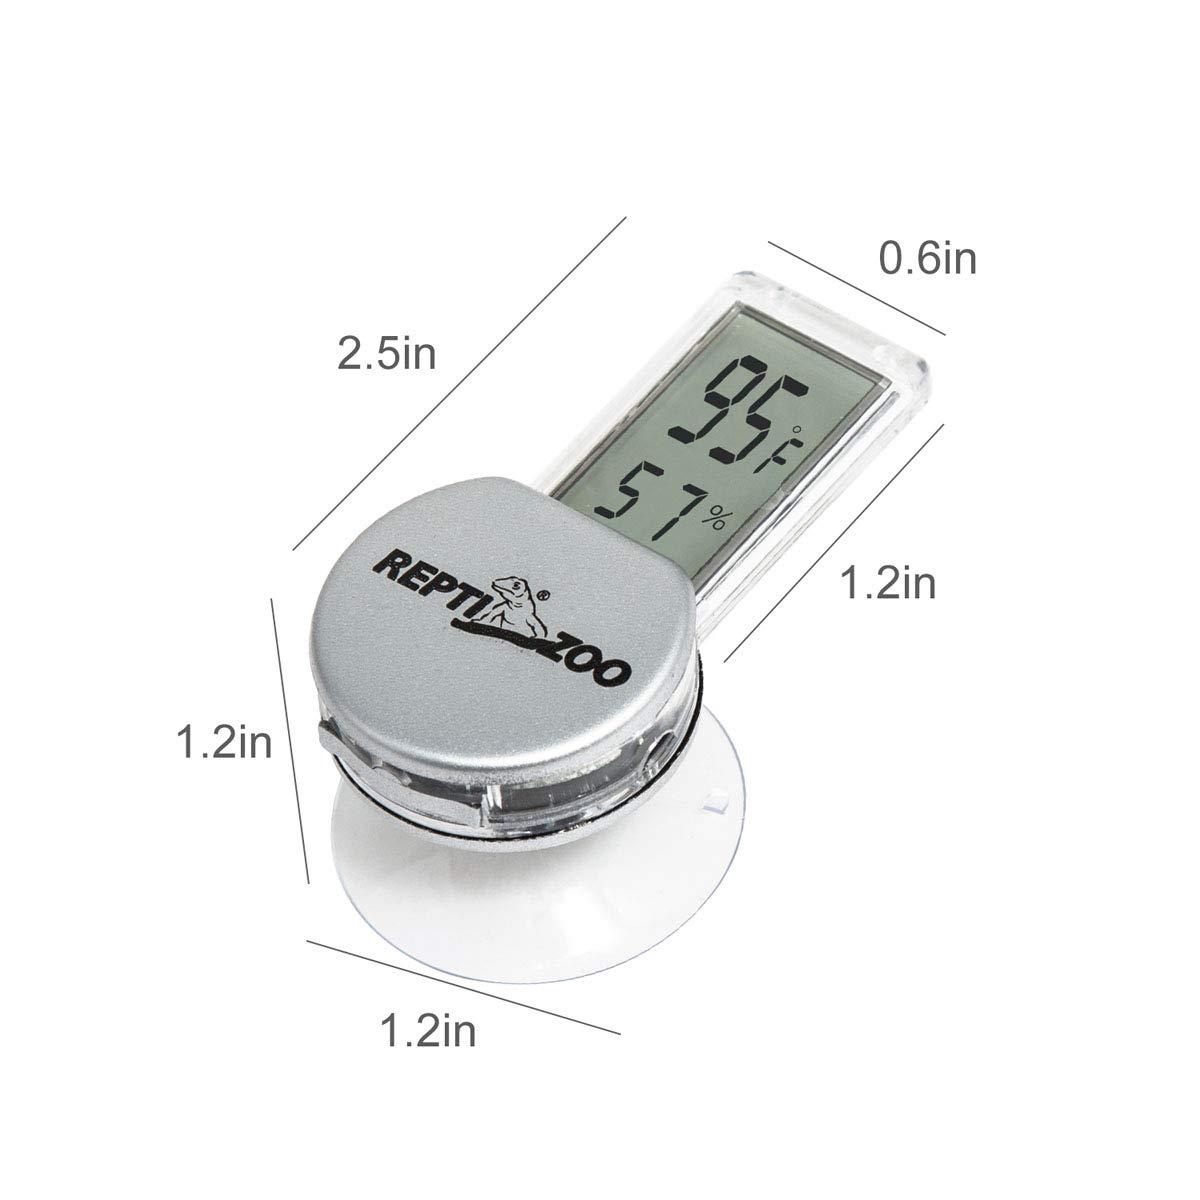 REPTI ZOO Reptile Terrarium Thermometer Hygrometer Digital LCD Display Pet  Rearing Box Reptiles Tank Thermometer Hygrometer with Suction Cup